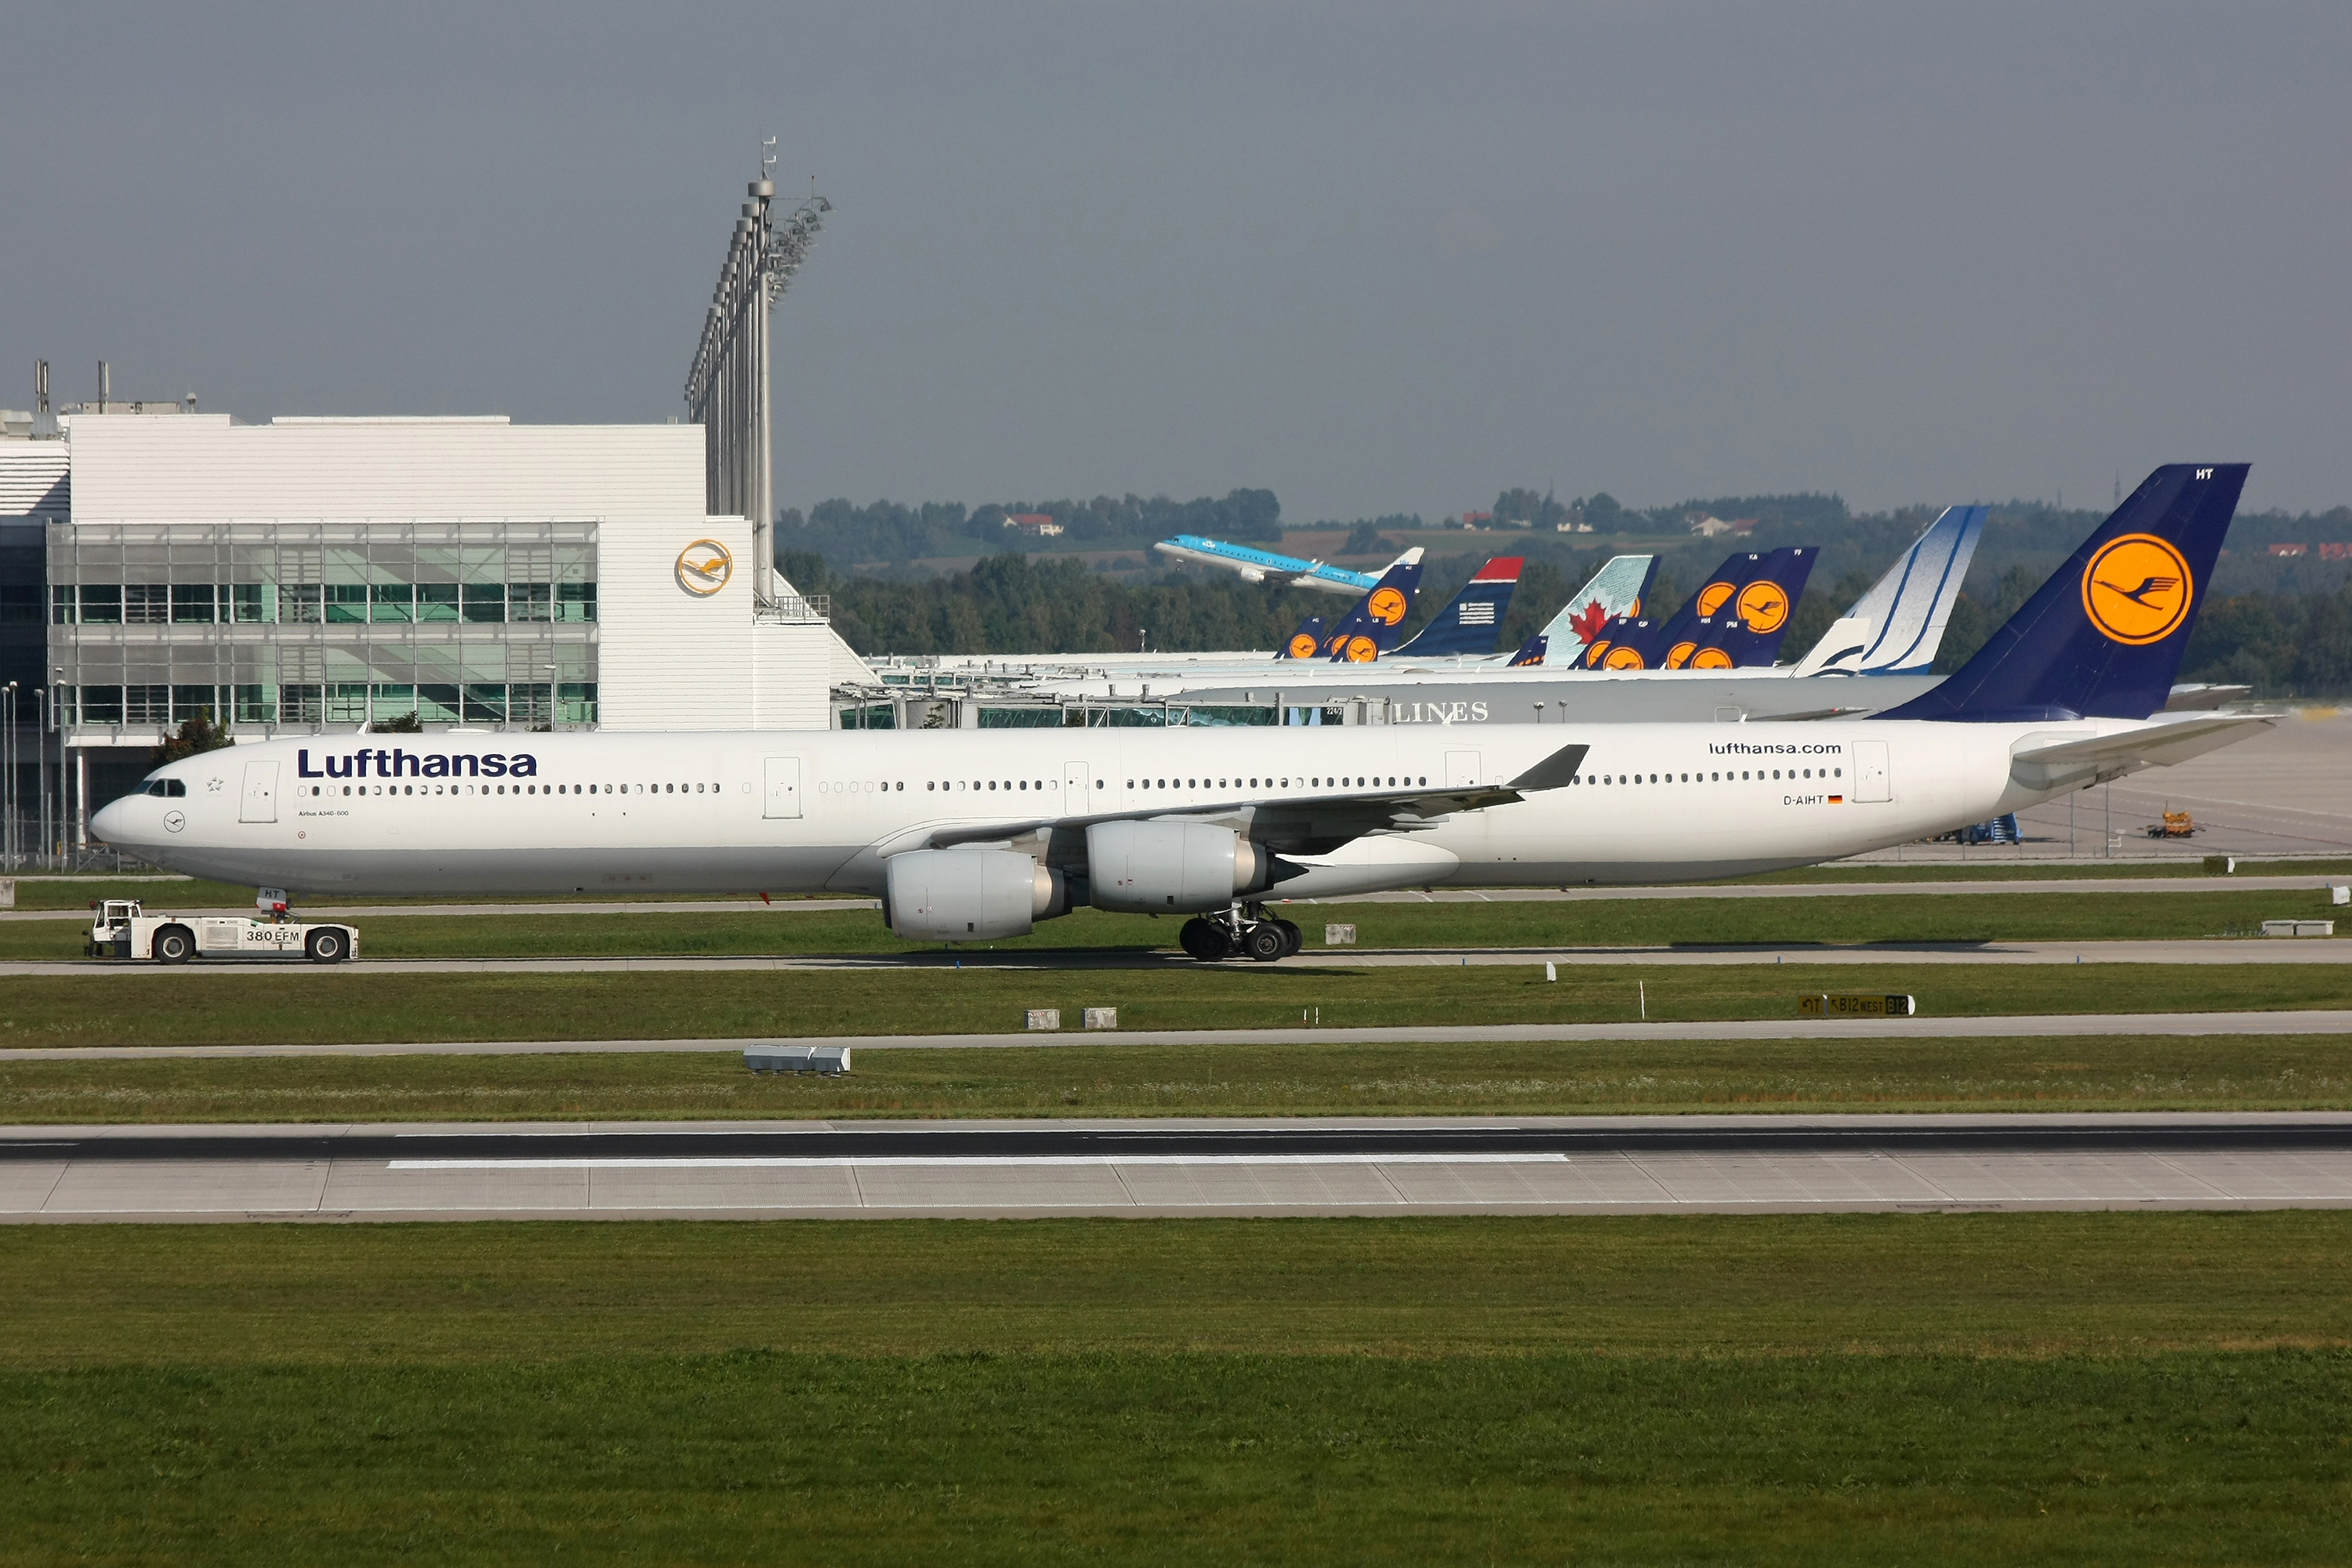 Airbus A340-200/300 previous